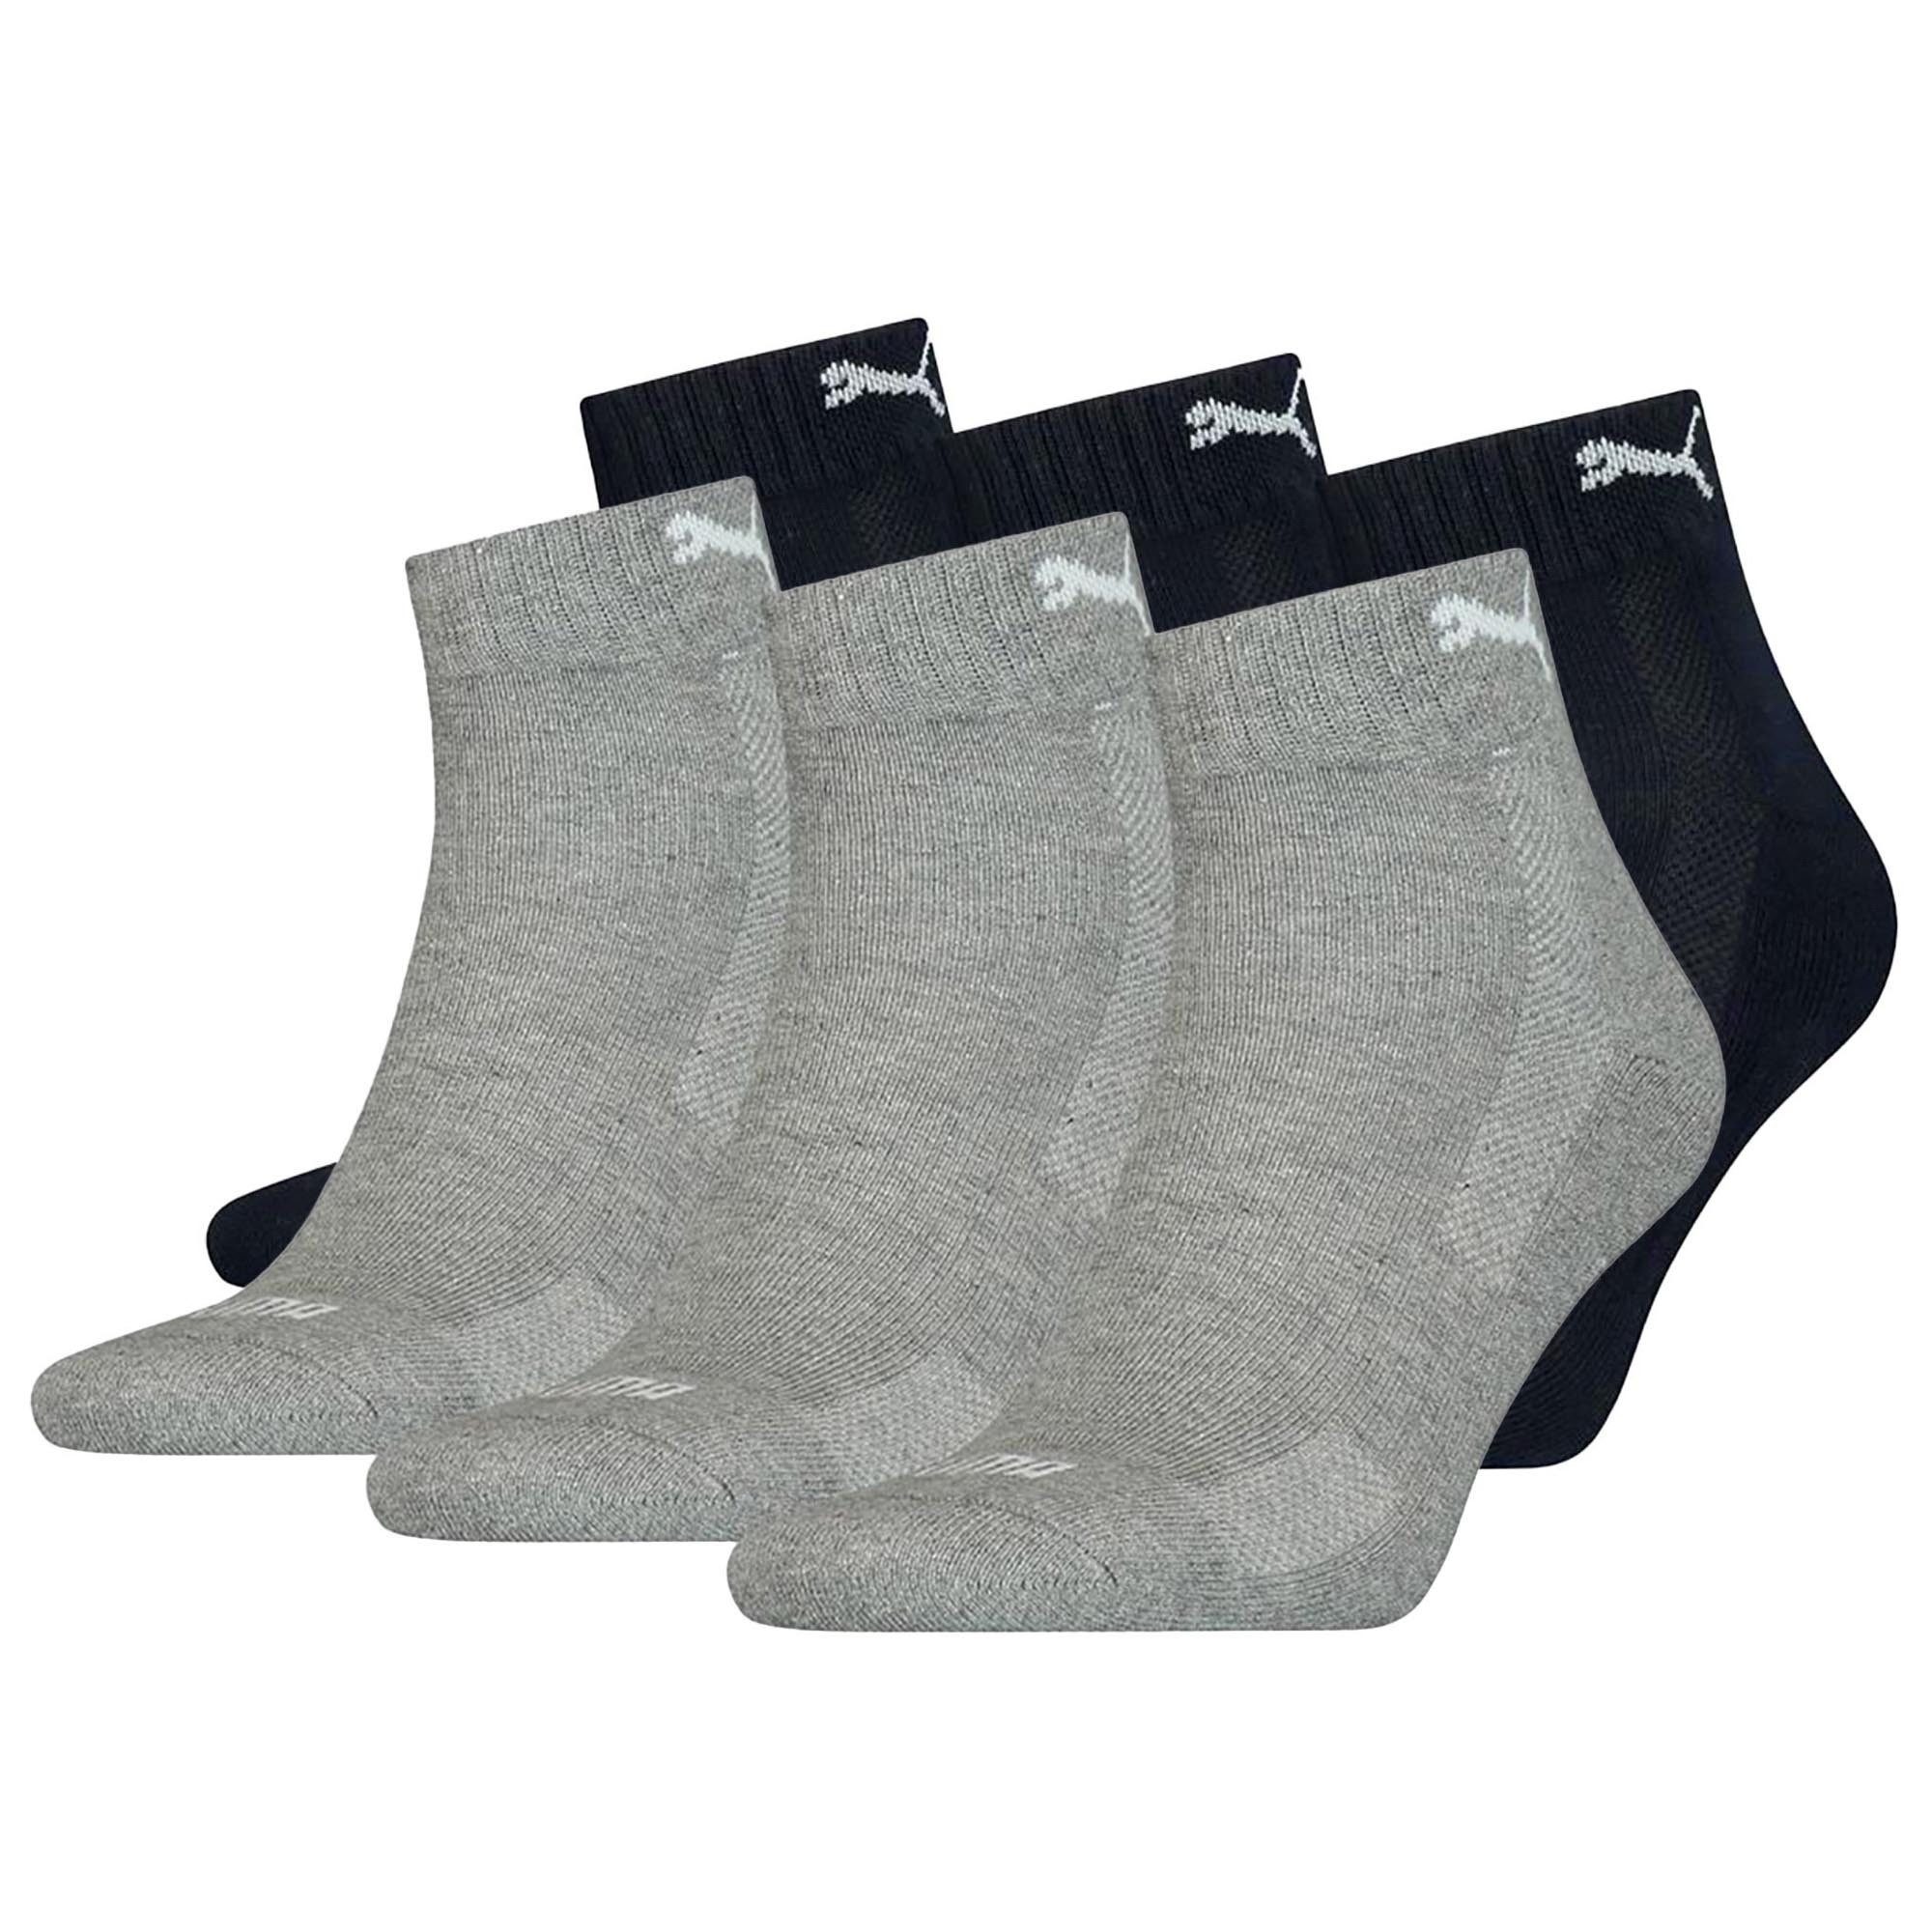 PUMA Sportsocken Unisex Quarter-Socken, 6er Pack - Cushioned